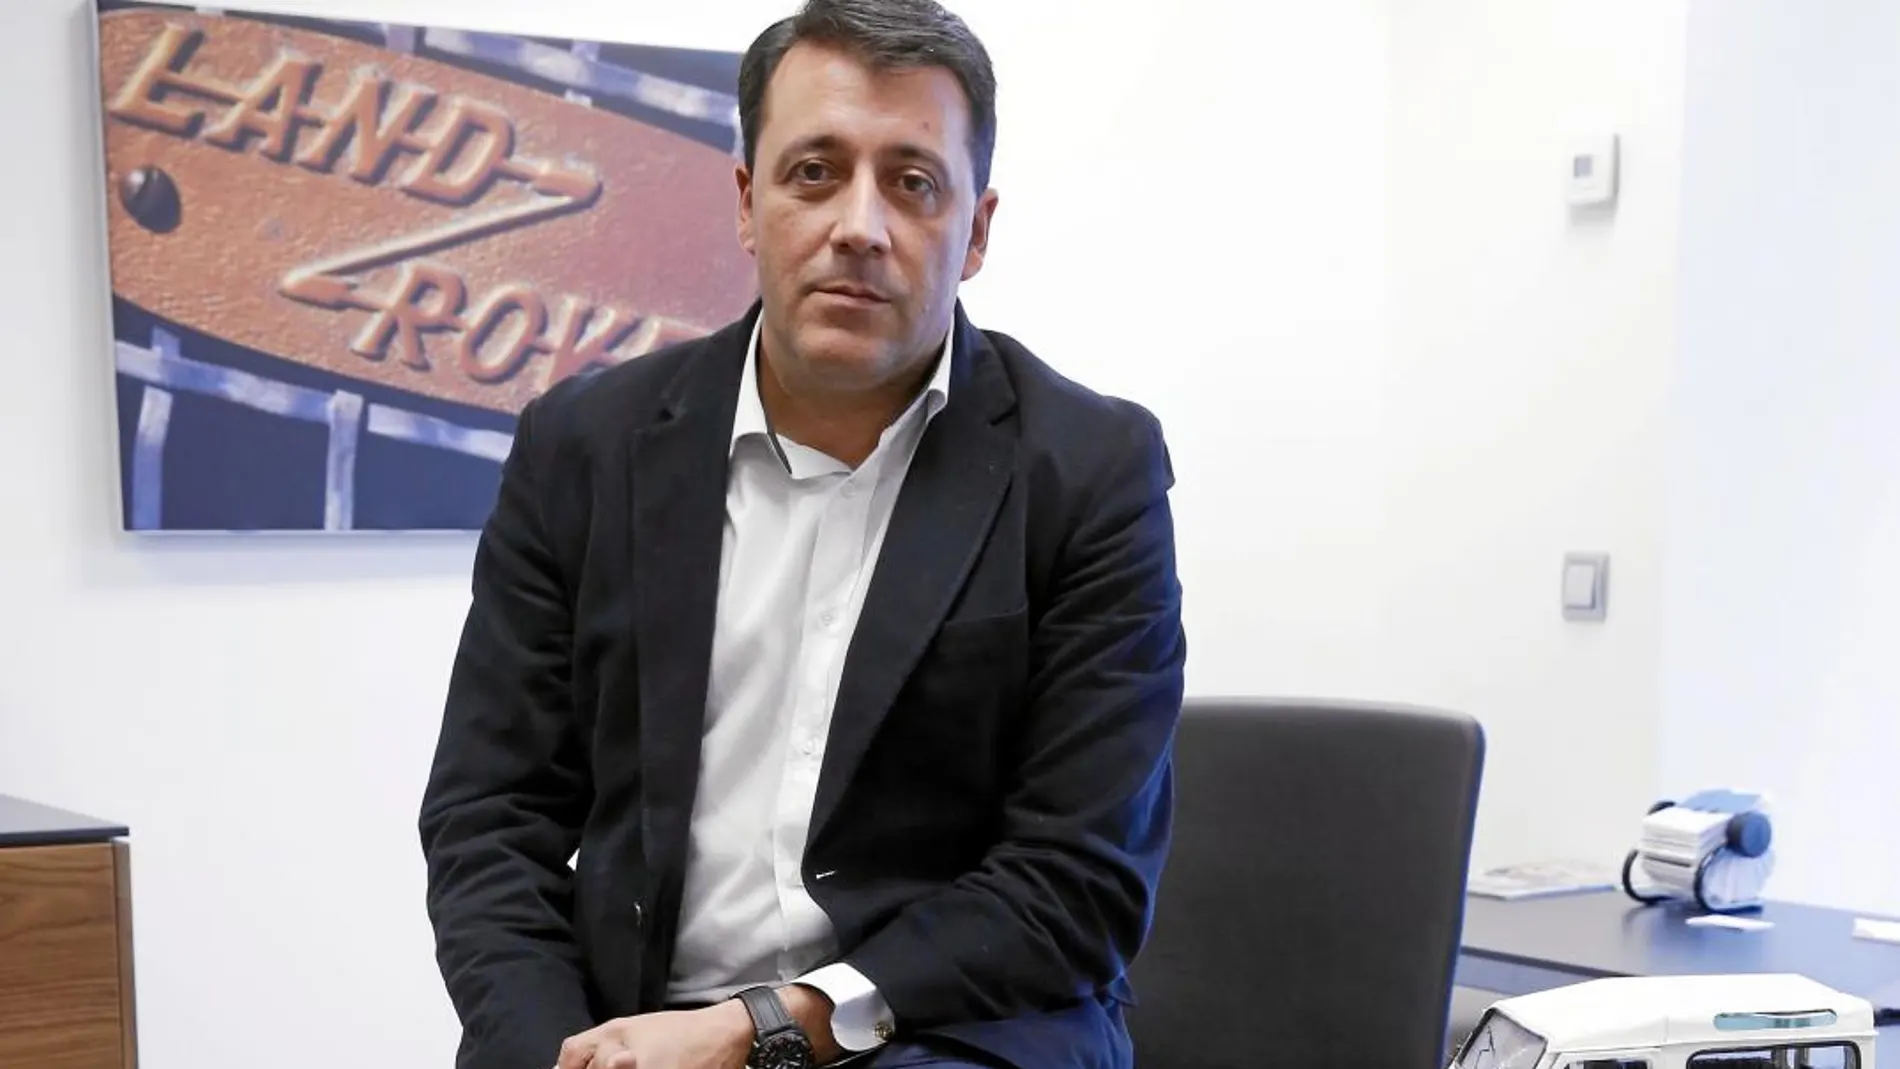 Luis Antonio Ruiz lleva desde 2010 presidiendo Jaguar Land Rover España